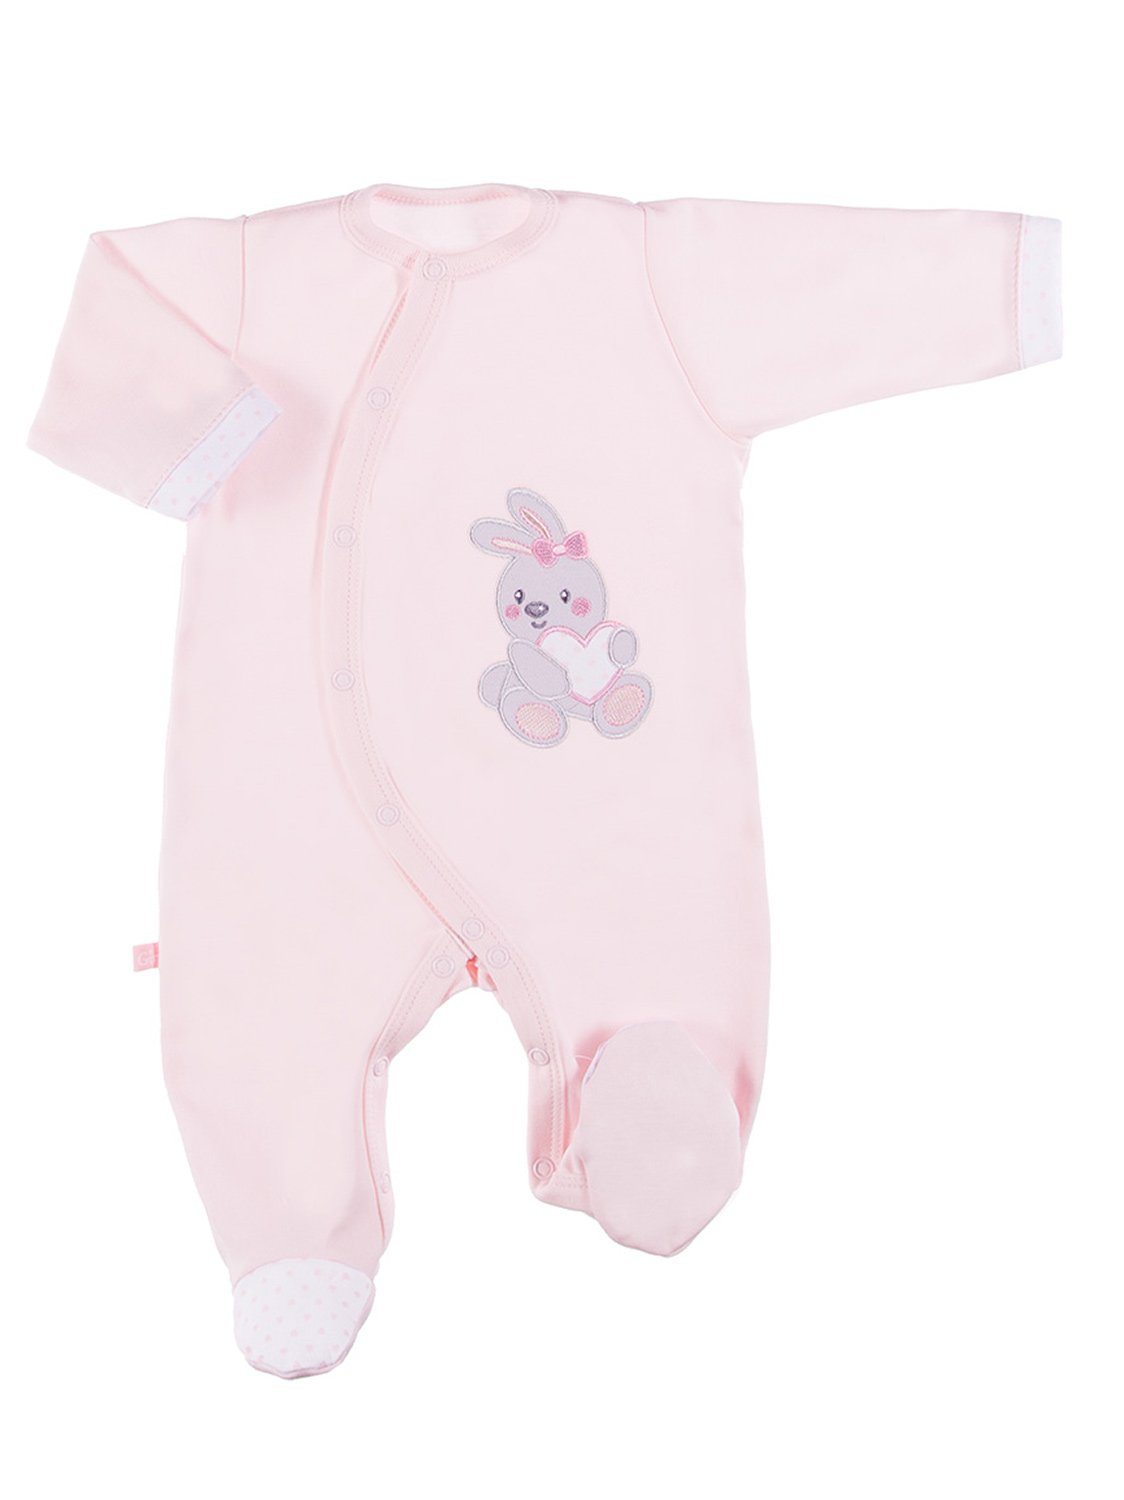 Early Baby Babygrow, Embroidered Bunny Design - Pink Sleepsuit / Babygrow EEVI 